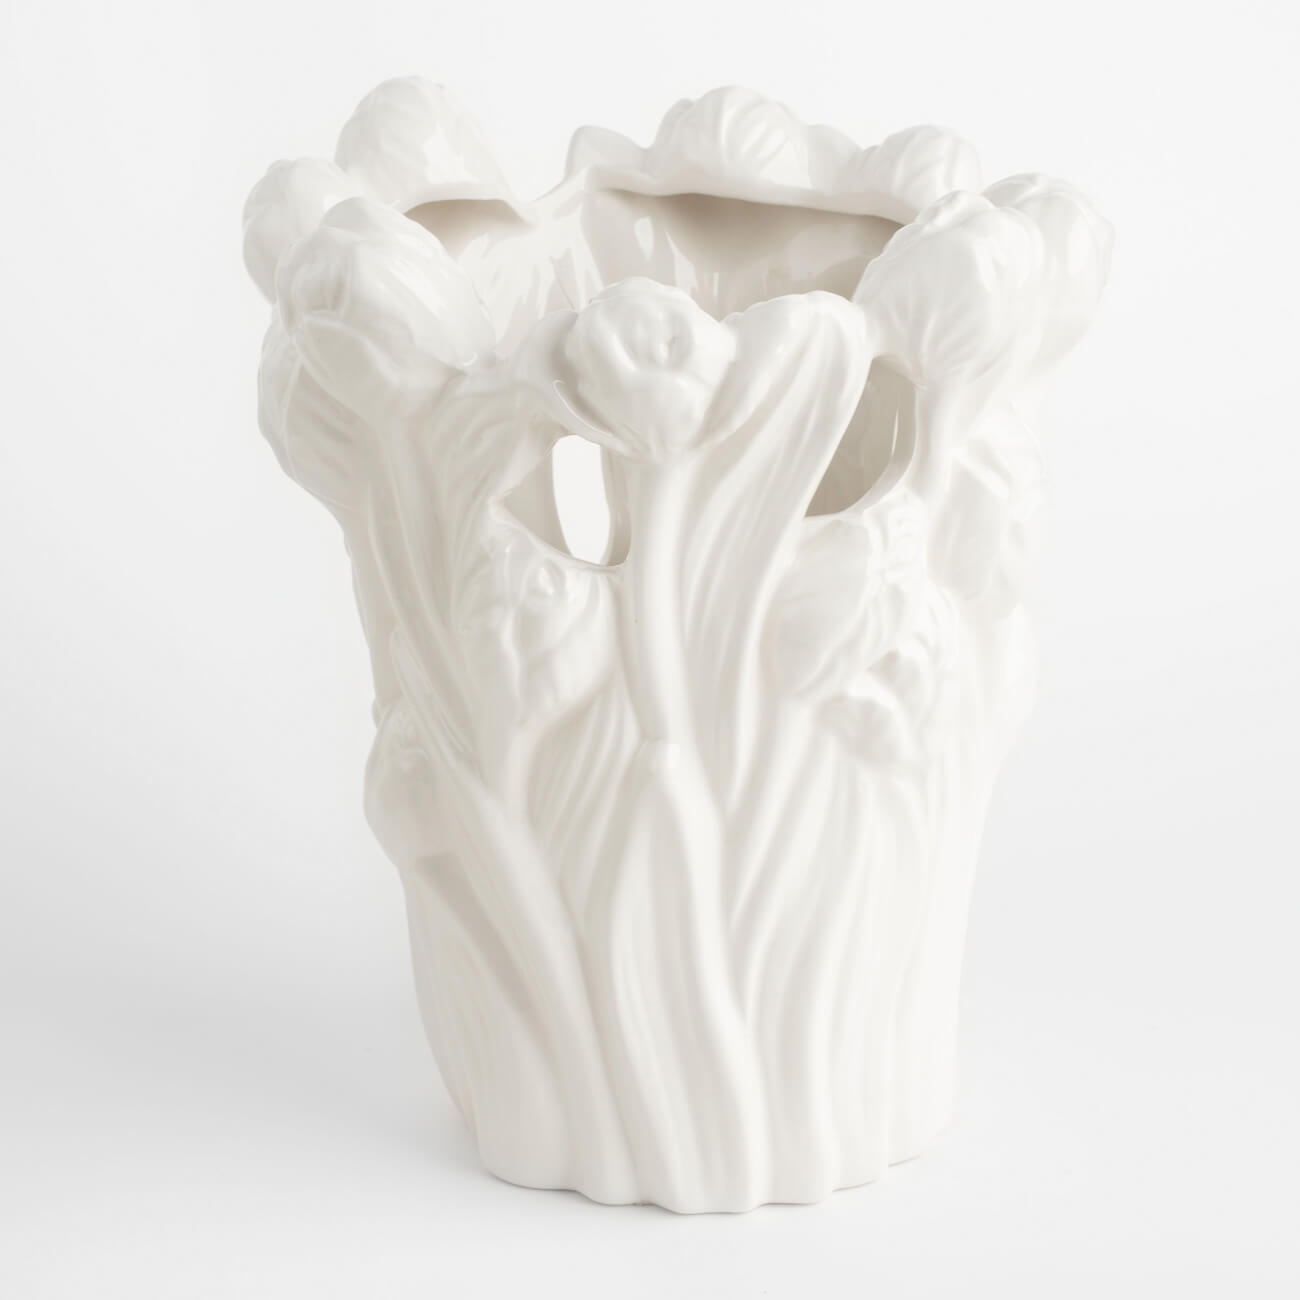 Ваза для цветов, 25 см, декоративная, керамика, белая, Тюльпаны, Tulip ваза для фруктов 21х9 см керамика белая тюльпан tulip